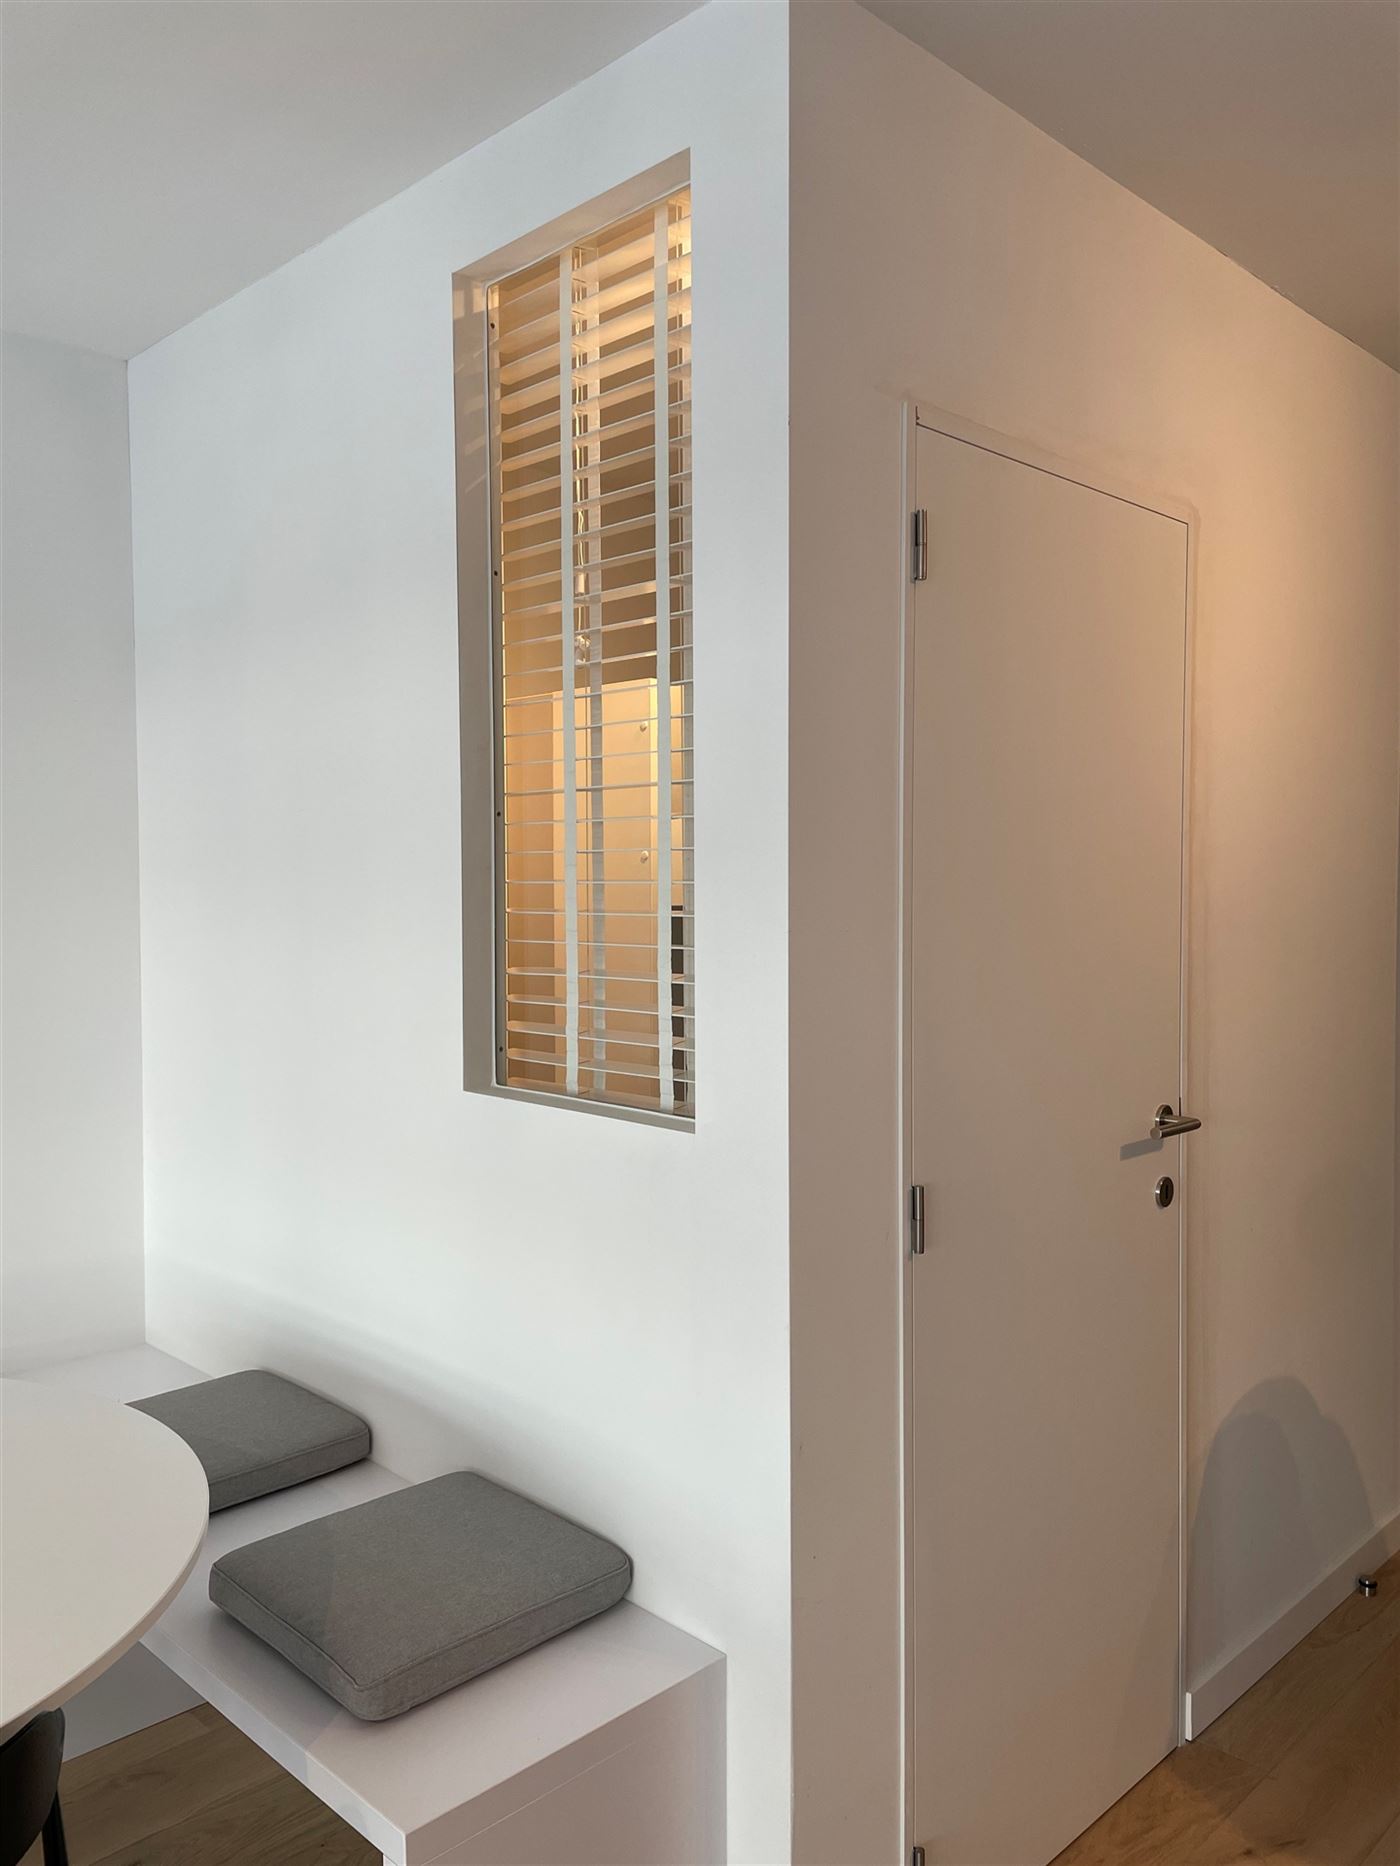 Res. Nieuwzand 003 - Instapklaar vernieuwd appartement met twee slaapkamers - Centraal gelegen op het gelijkvloers in de Franslaan - Inkom - Apart toi...